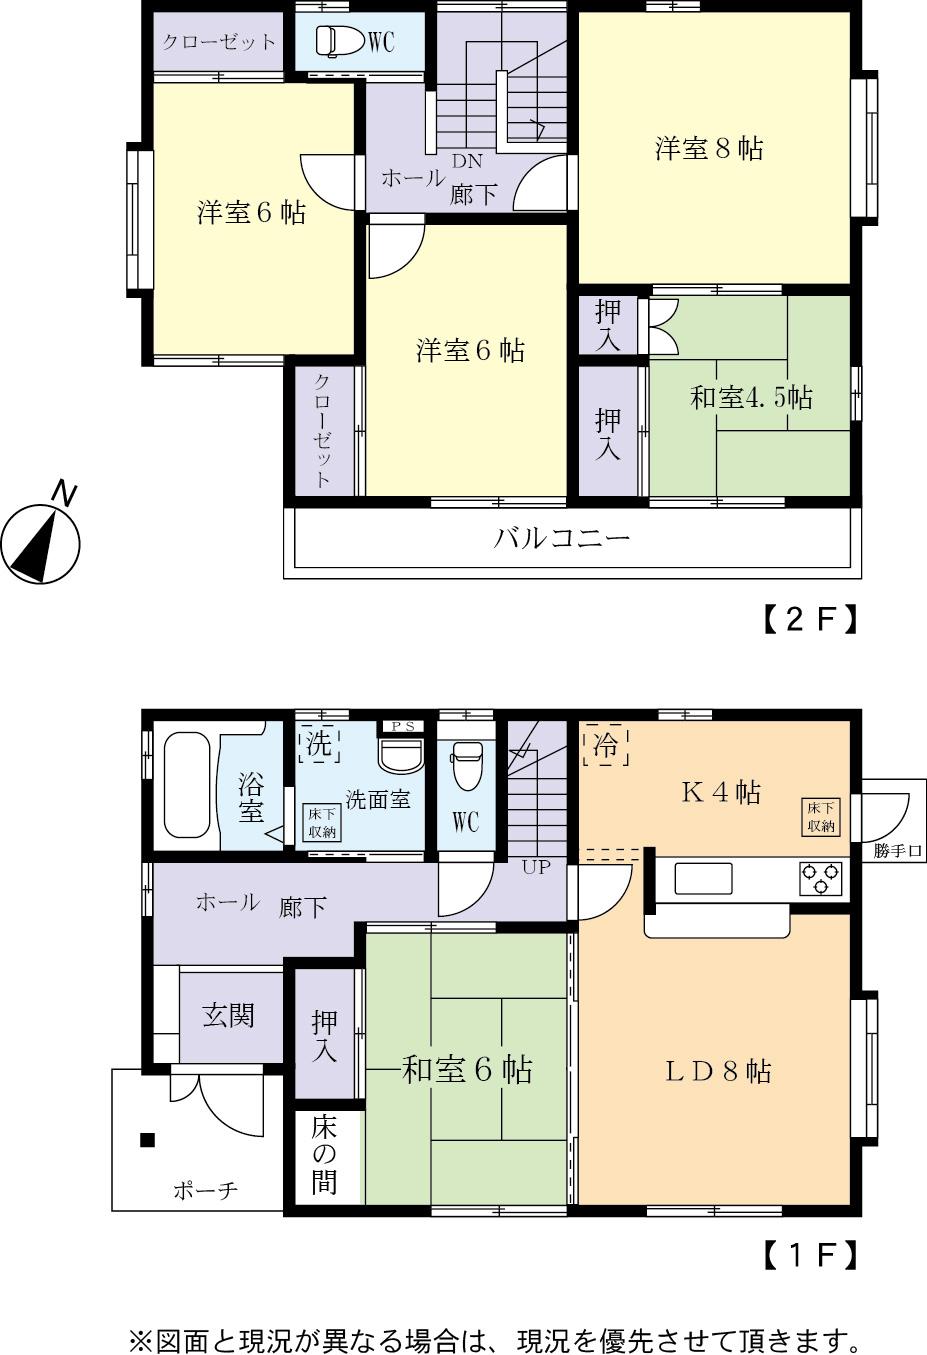 Floor plan. 14.8 million yen, 5LDK, Land area 158.15 sq m , Building area 109.3 sq m